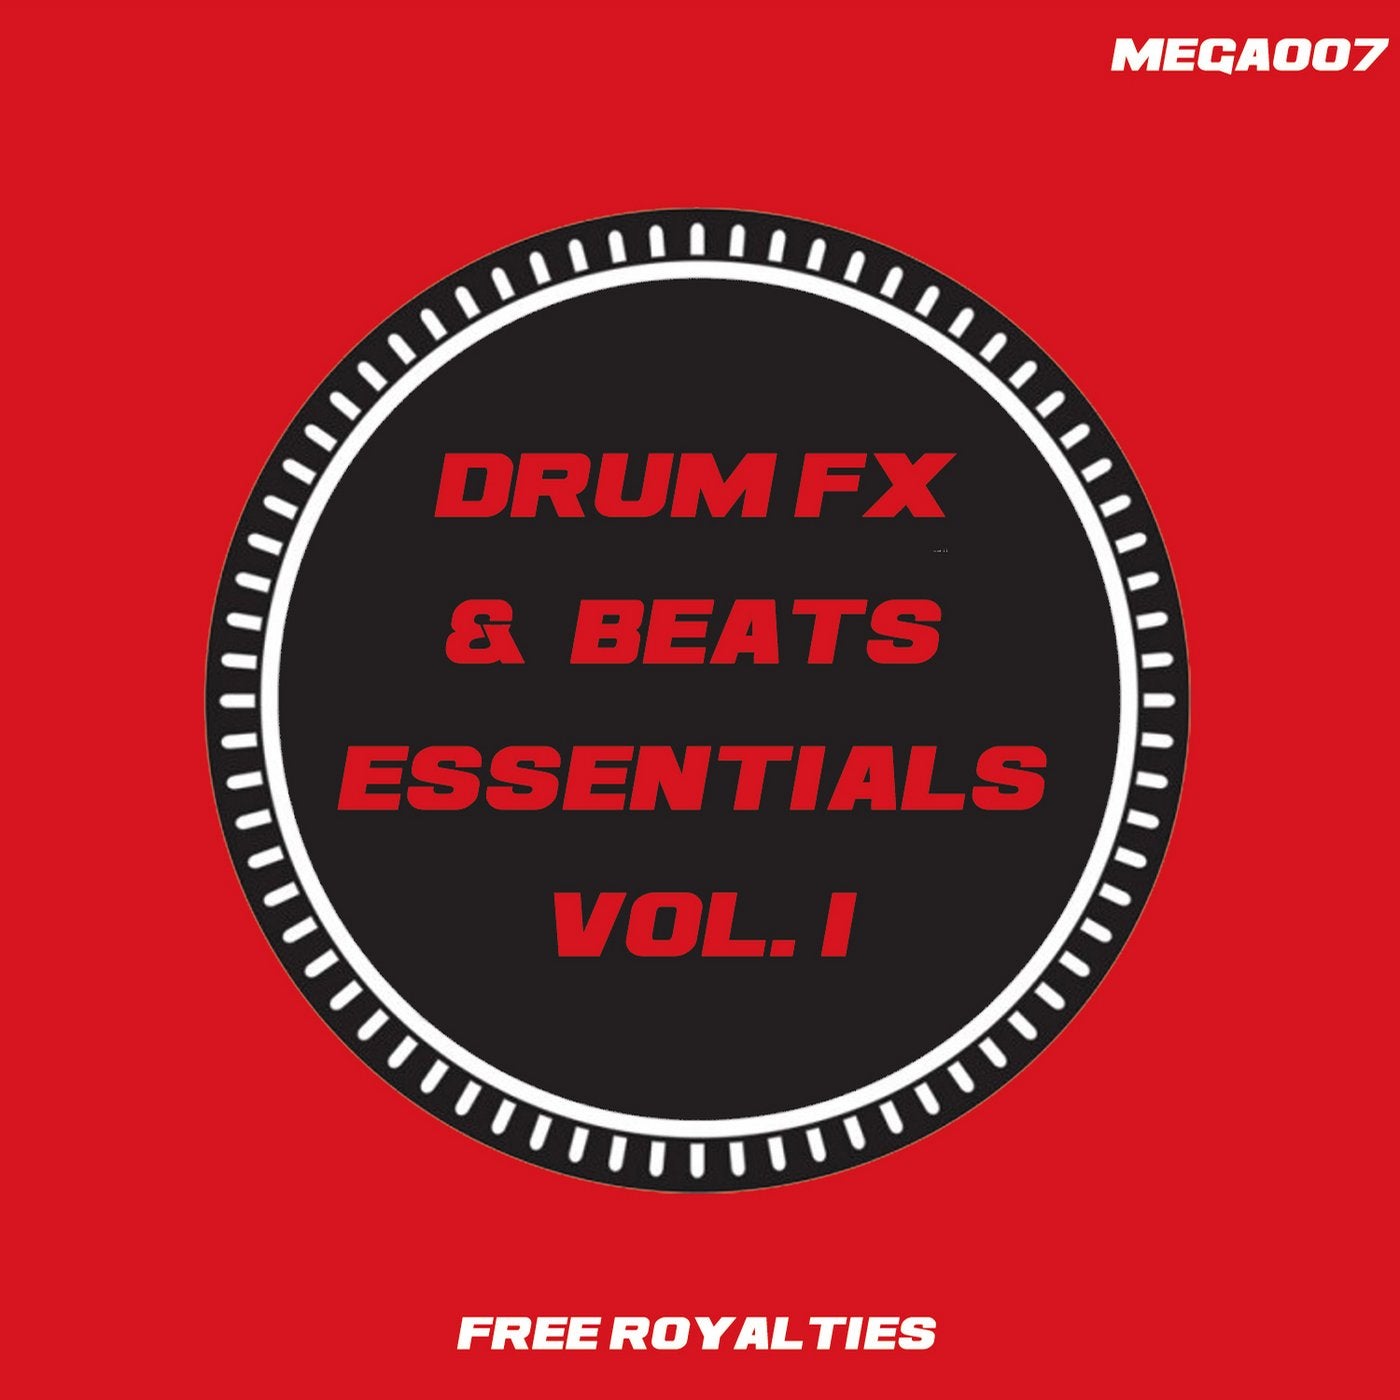 Drum FX & Beats Essentials Vol. 1